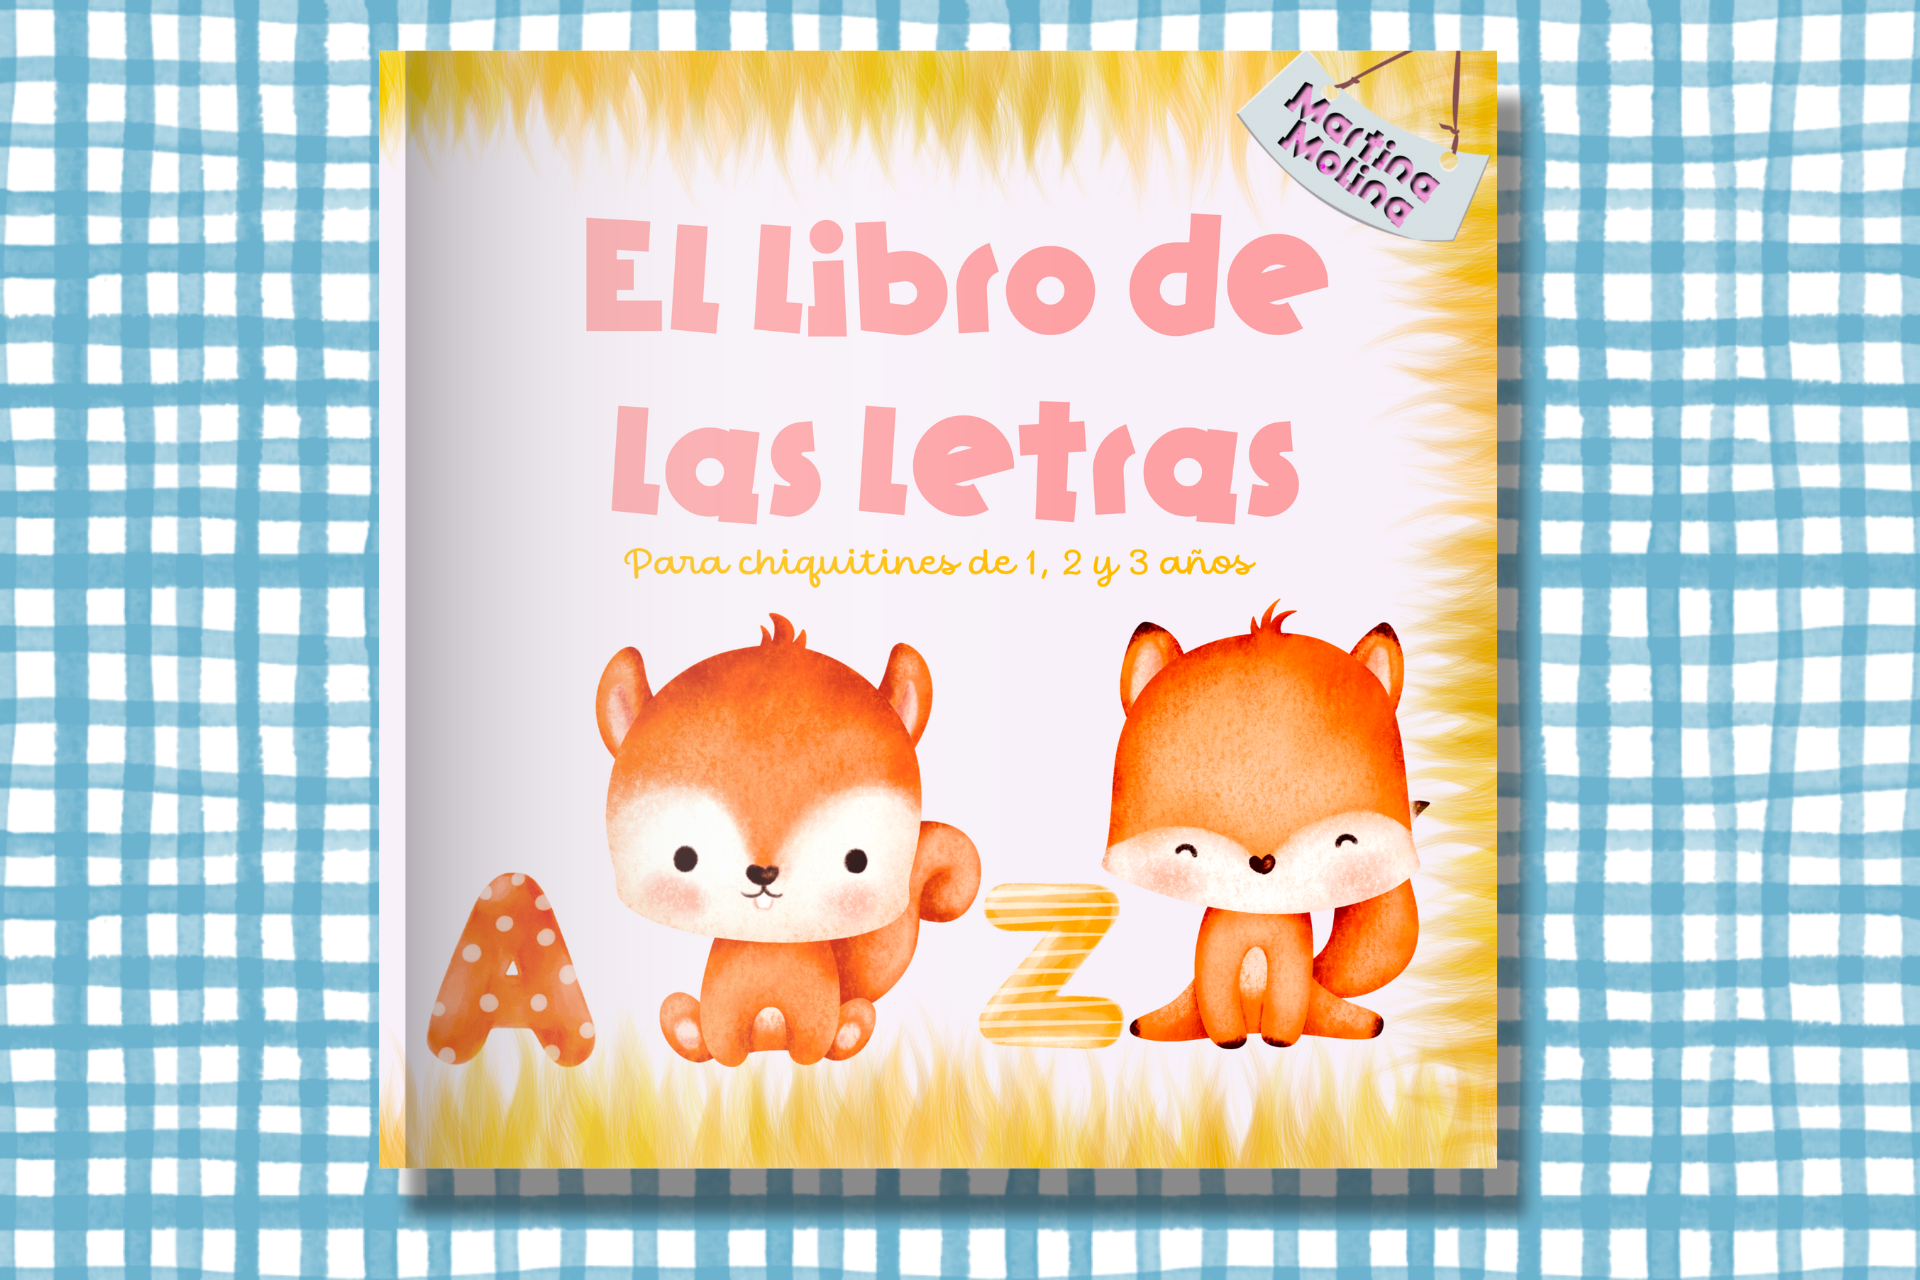 Libros para niños de 2, 3, 4 y 5 años – libros infantiles Martina